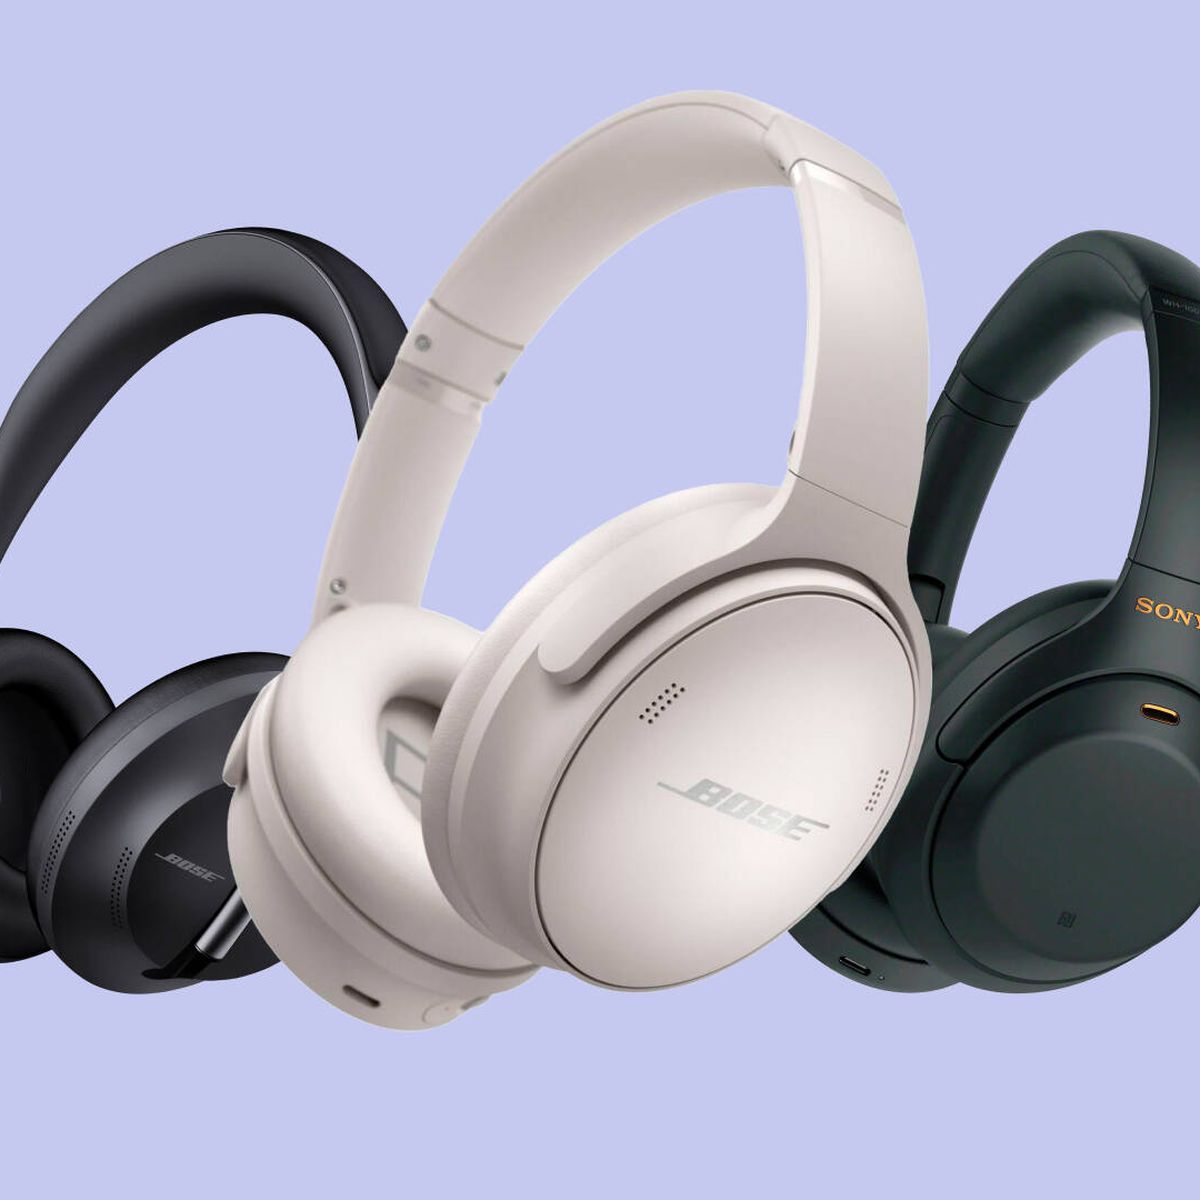 Consigue estos auriculares inalámbricos Sony al 40% de descuento en